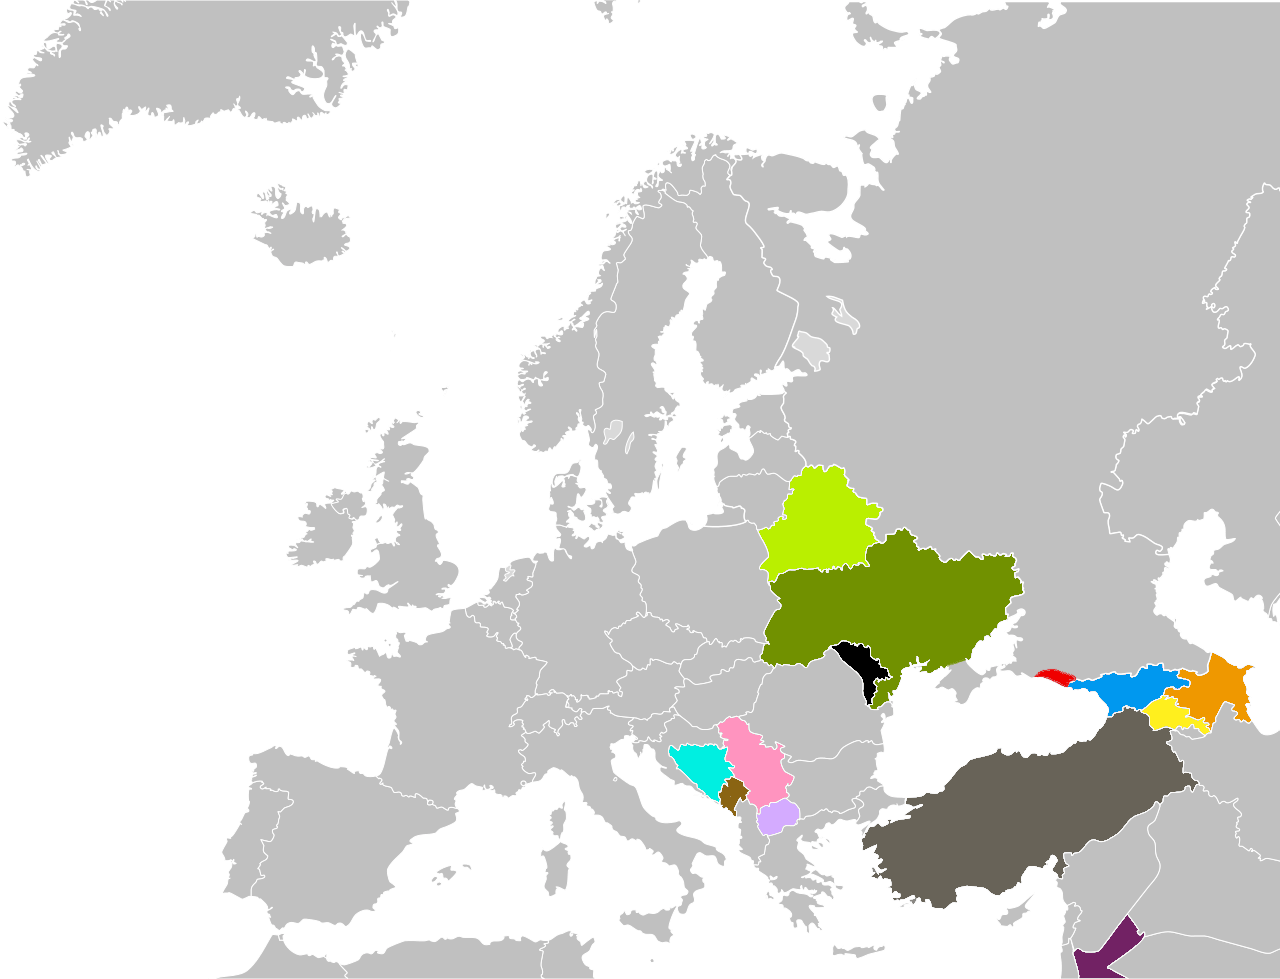 Карта Европы